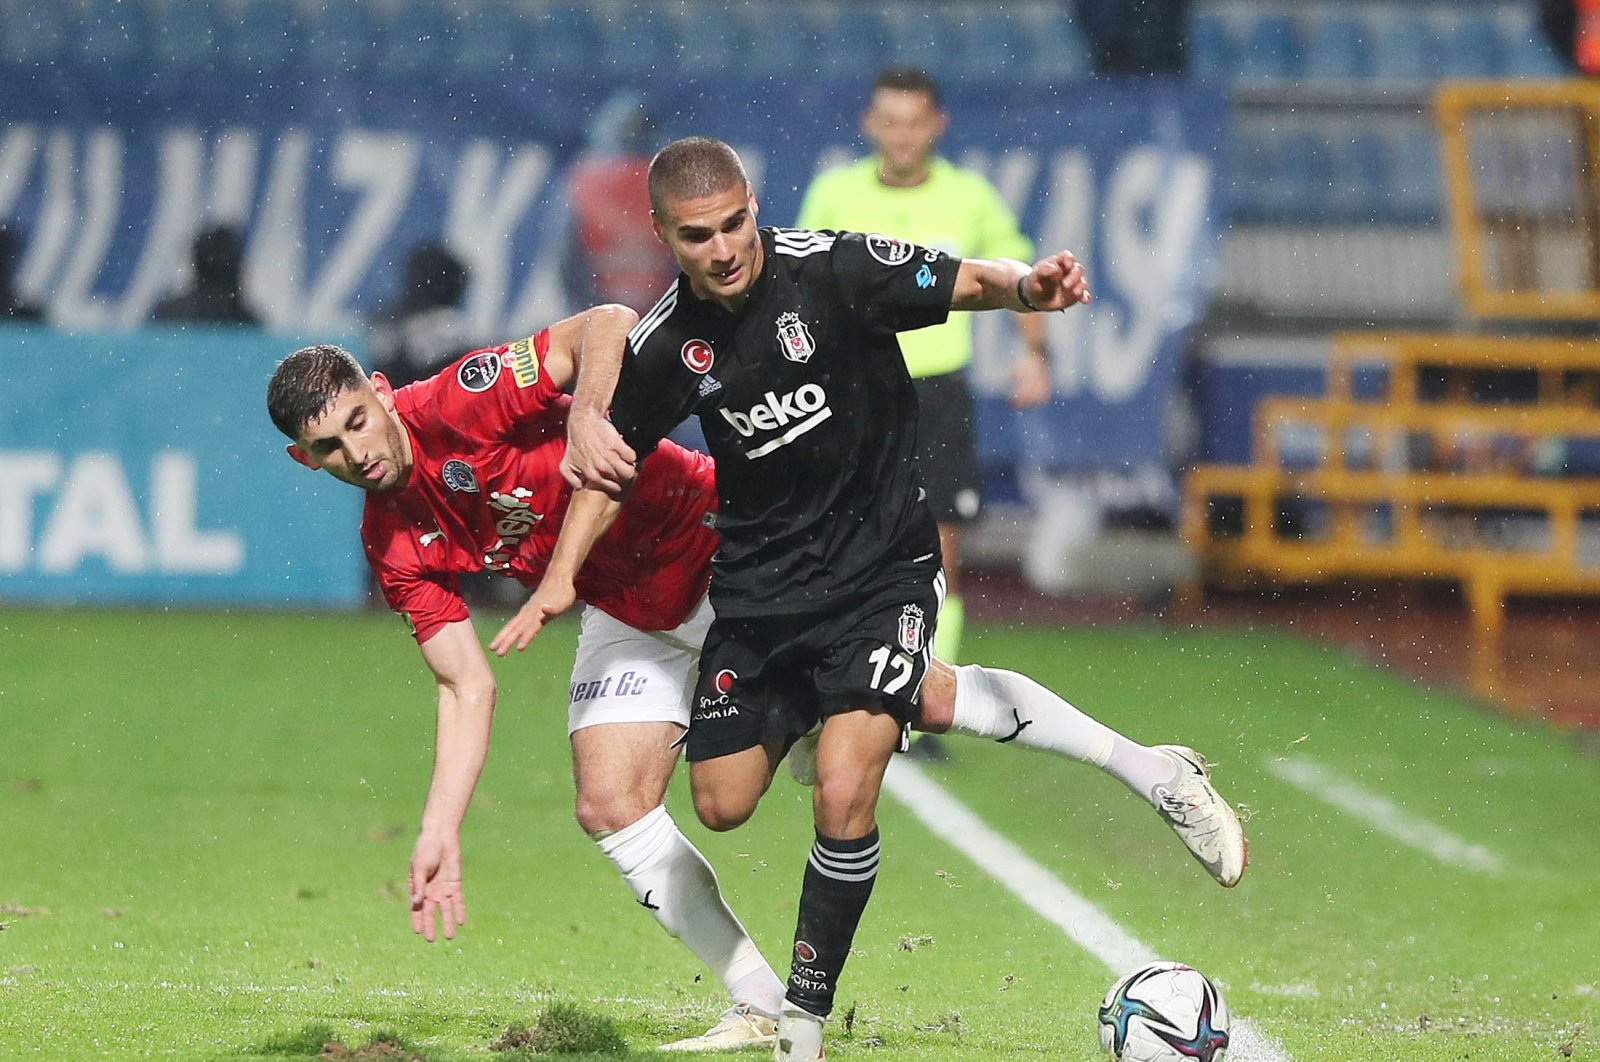 Kasımpaşa – Beşiktaş imbang 1-1 tapi kabar baik untuk Beşiktaş dari UEFA